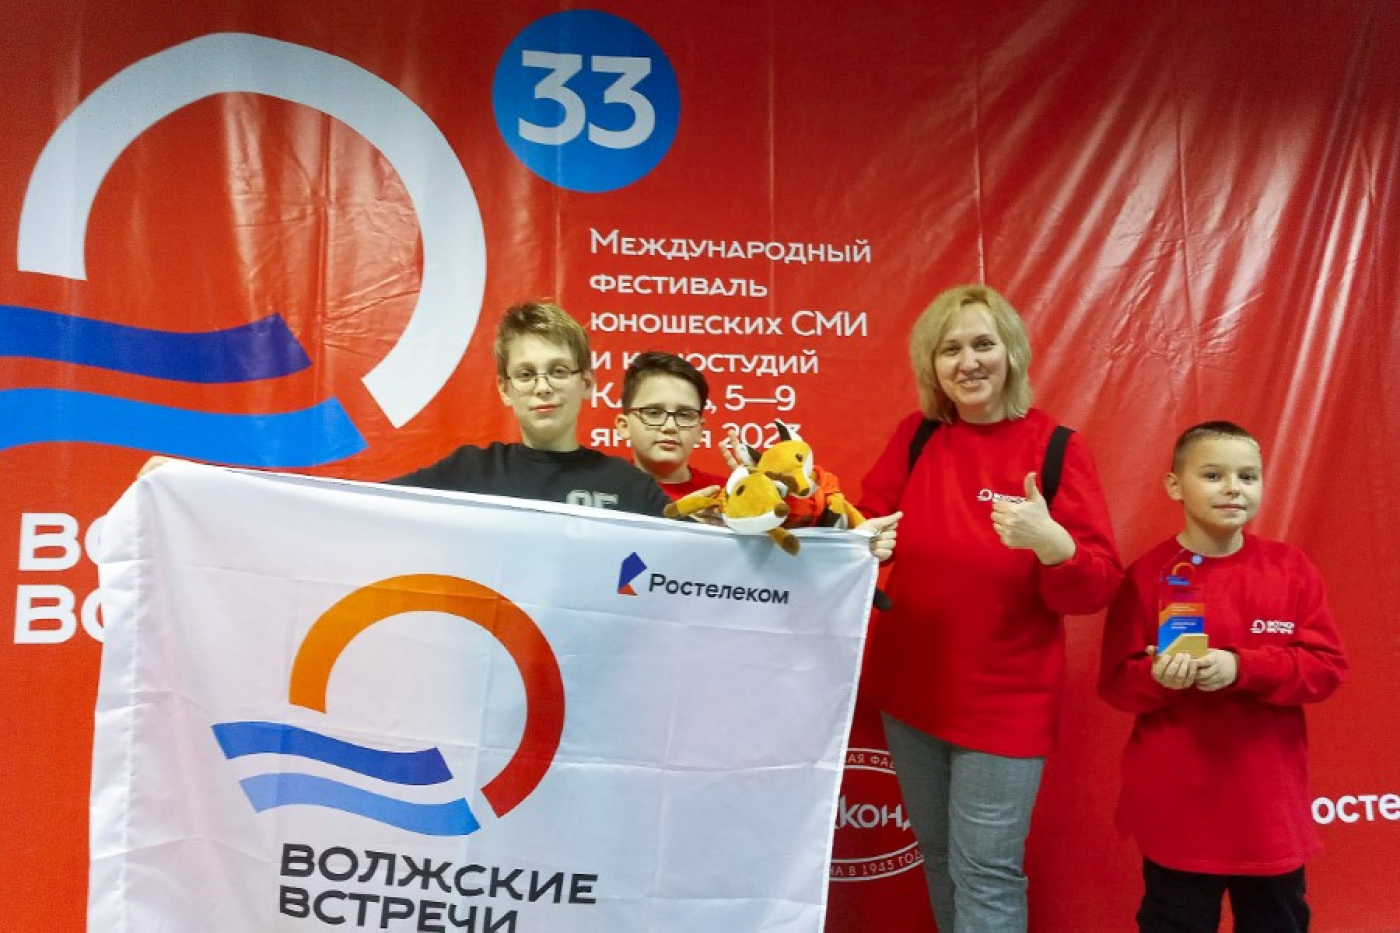 Юные журналисты Беларуси победили в столице Татарстана!